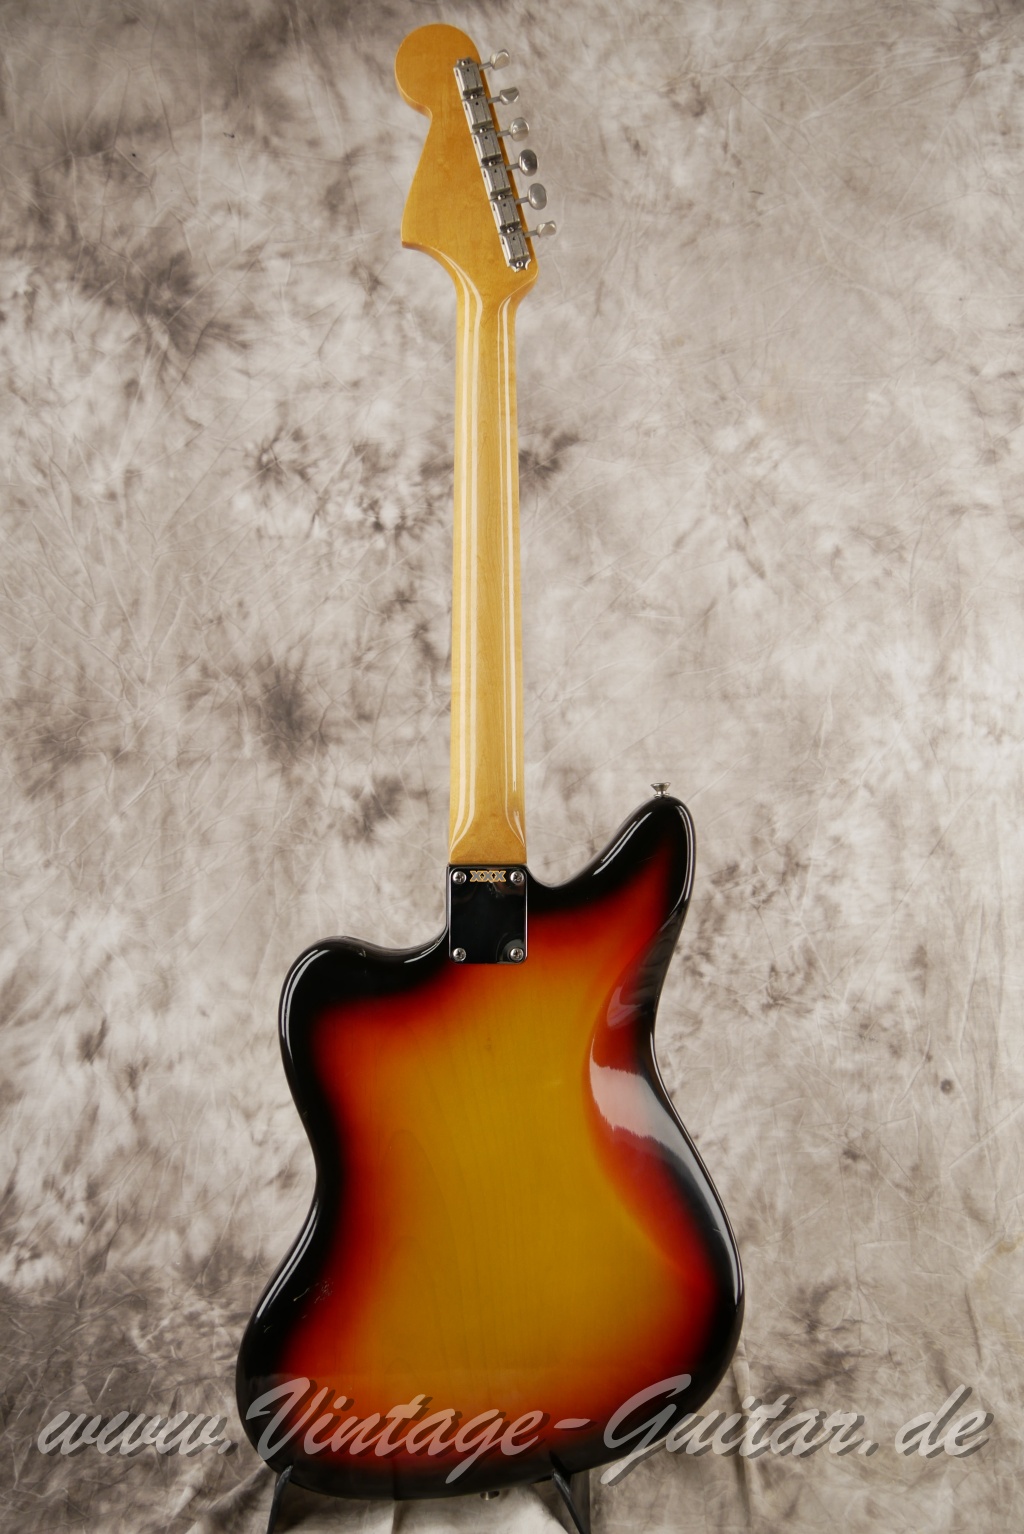 Fender_Jaguar_sunburst_1965_brown_case-002.JPG